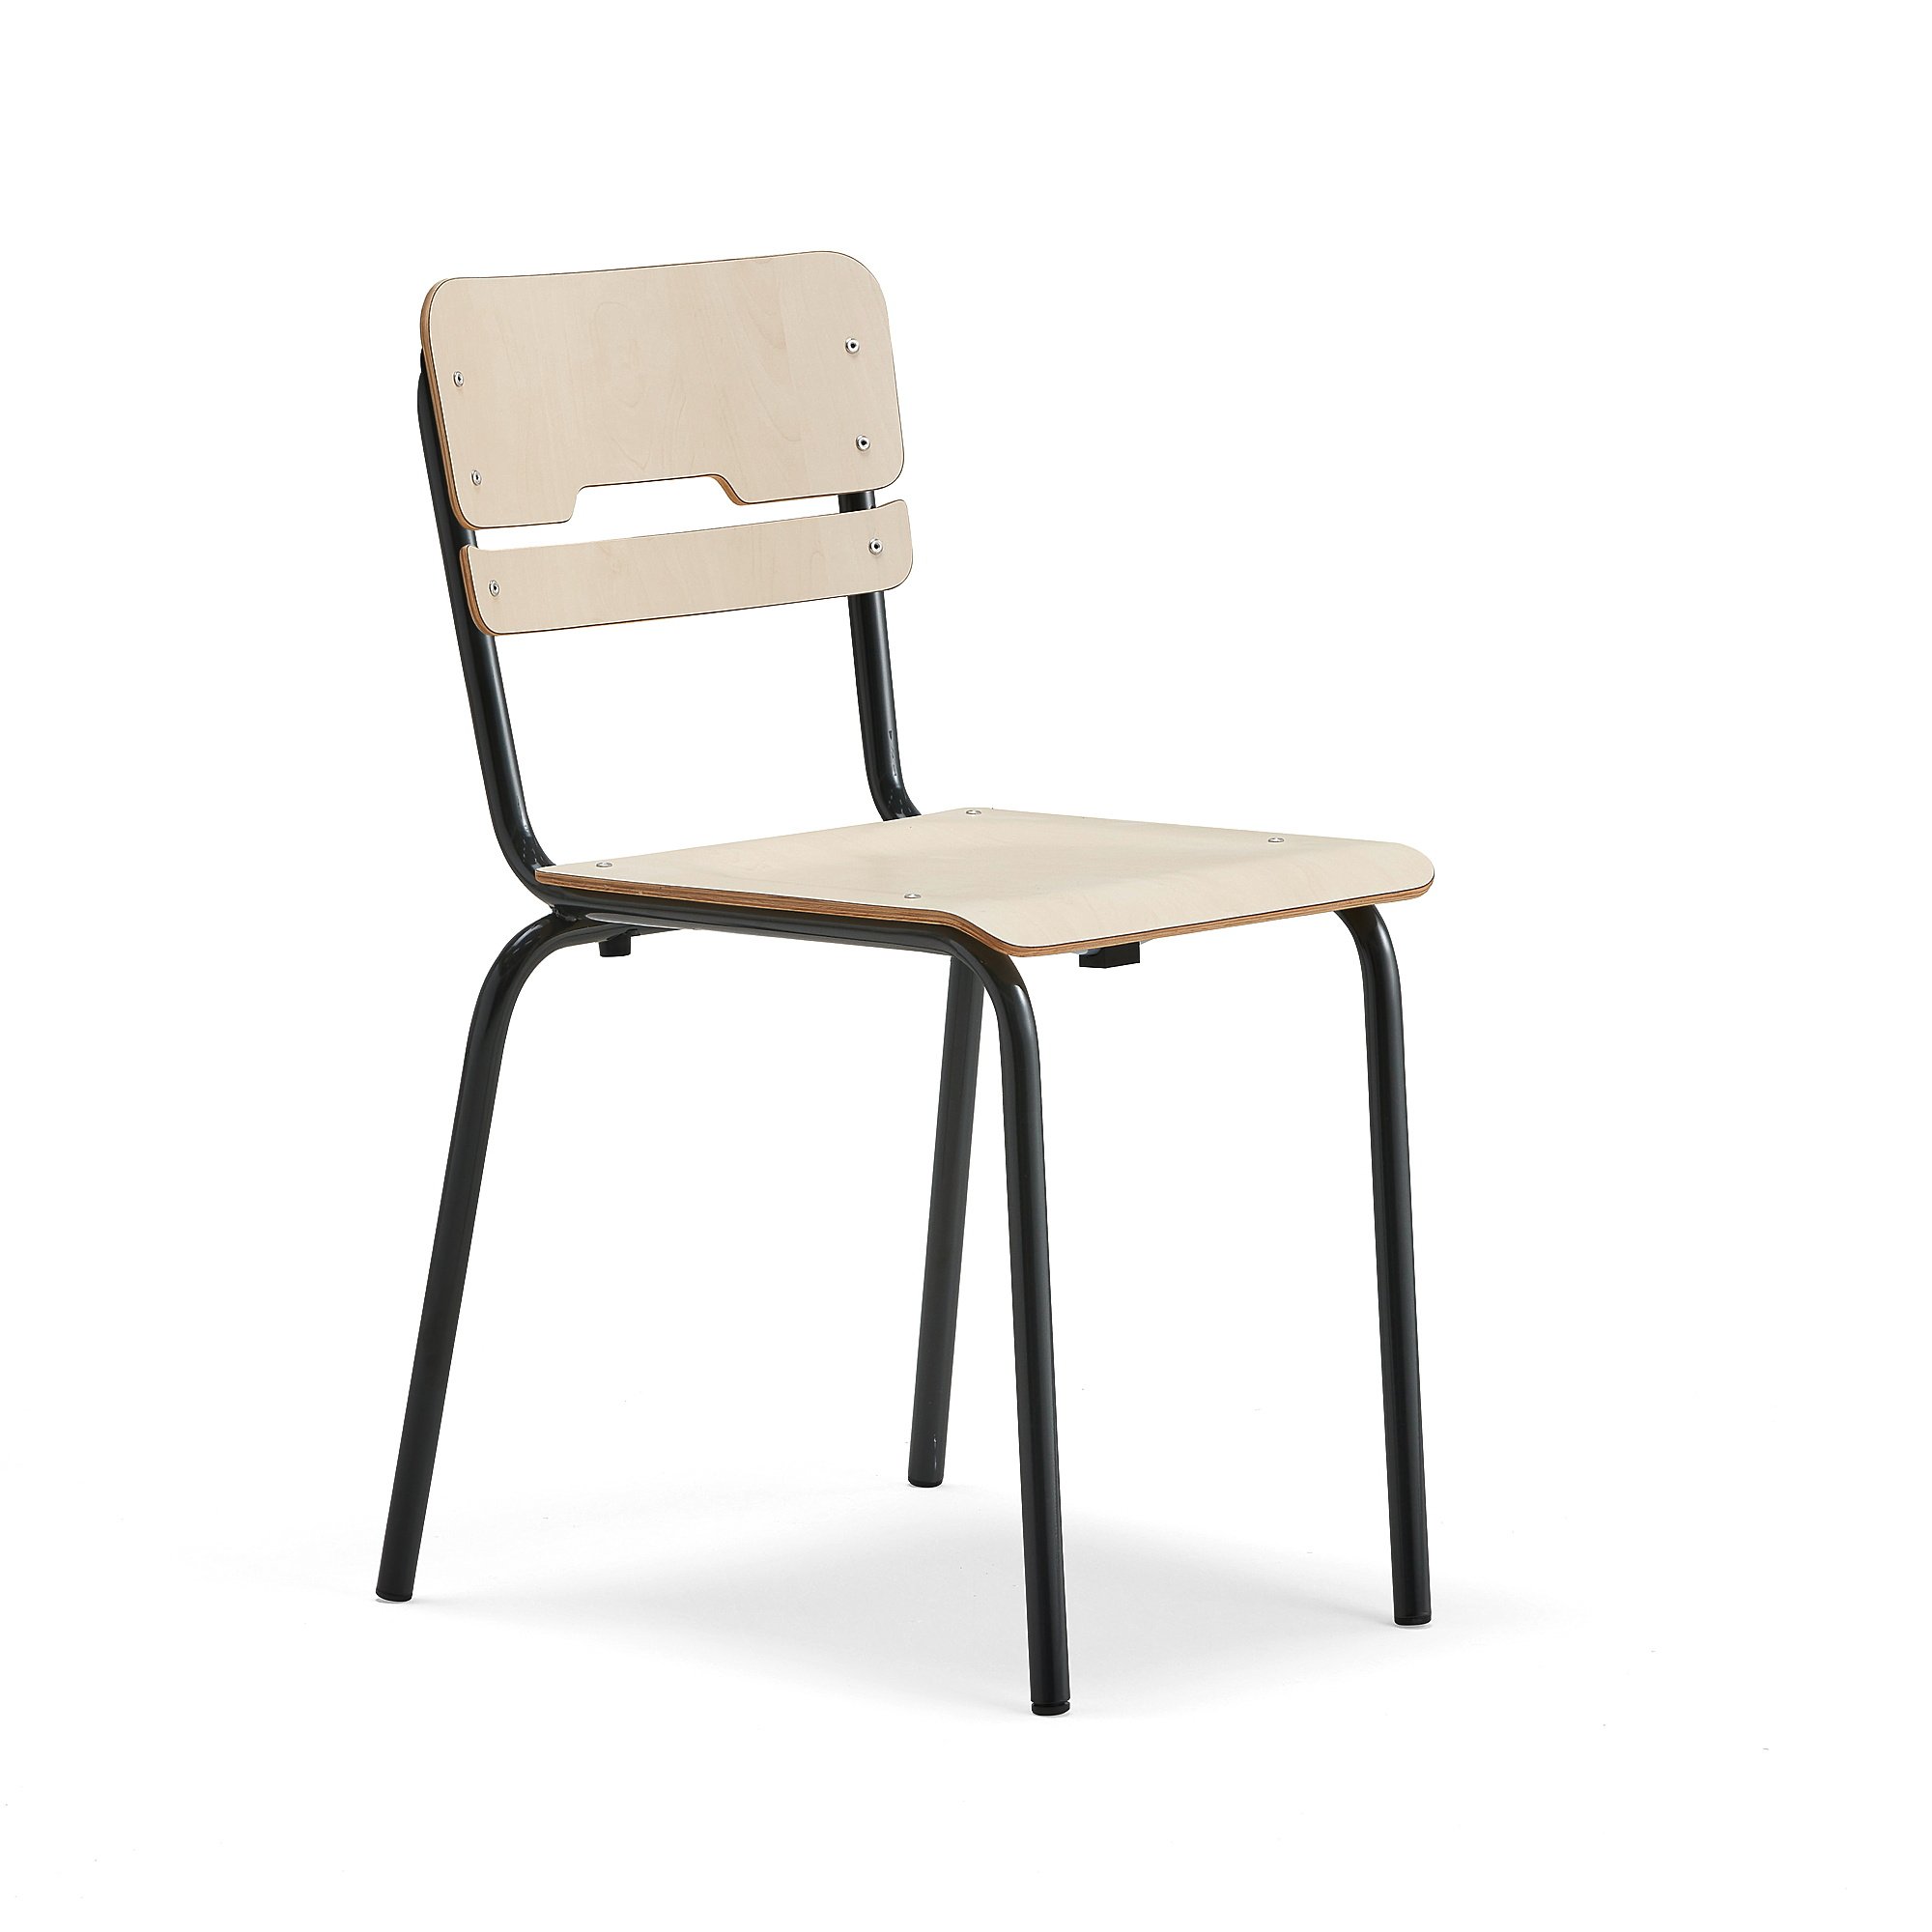 Levně Školní židle SCIENTIA, sedák 390x390 mm, výška 460 mm, antracitová/bříza